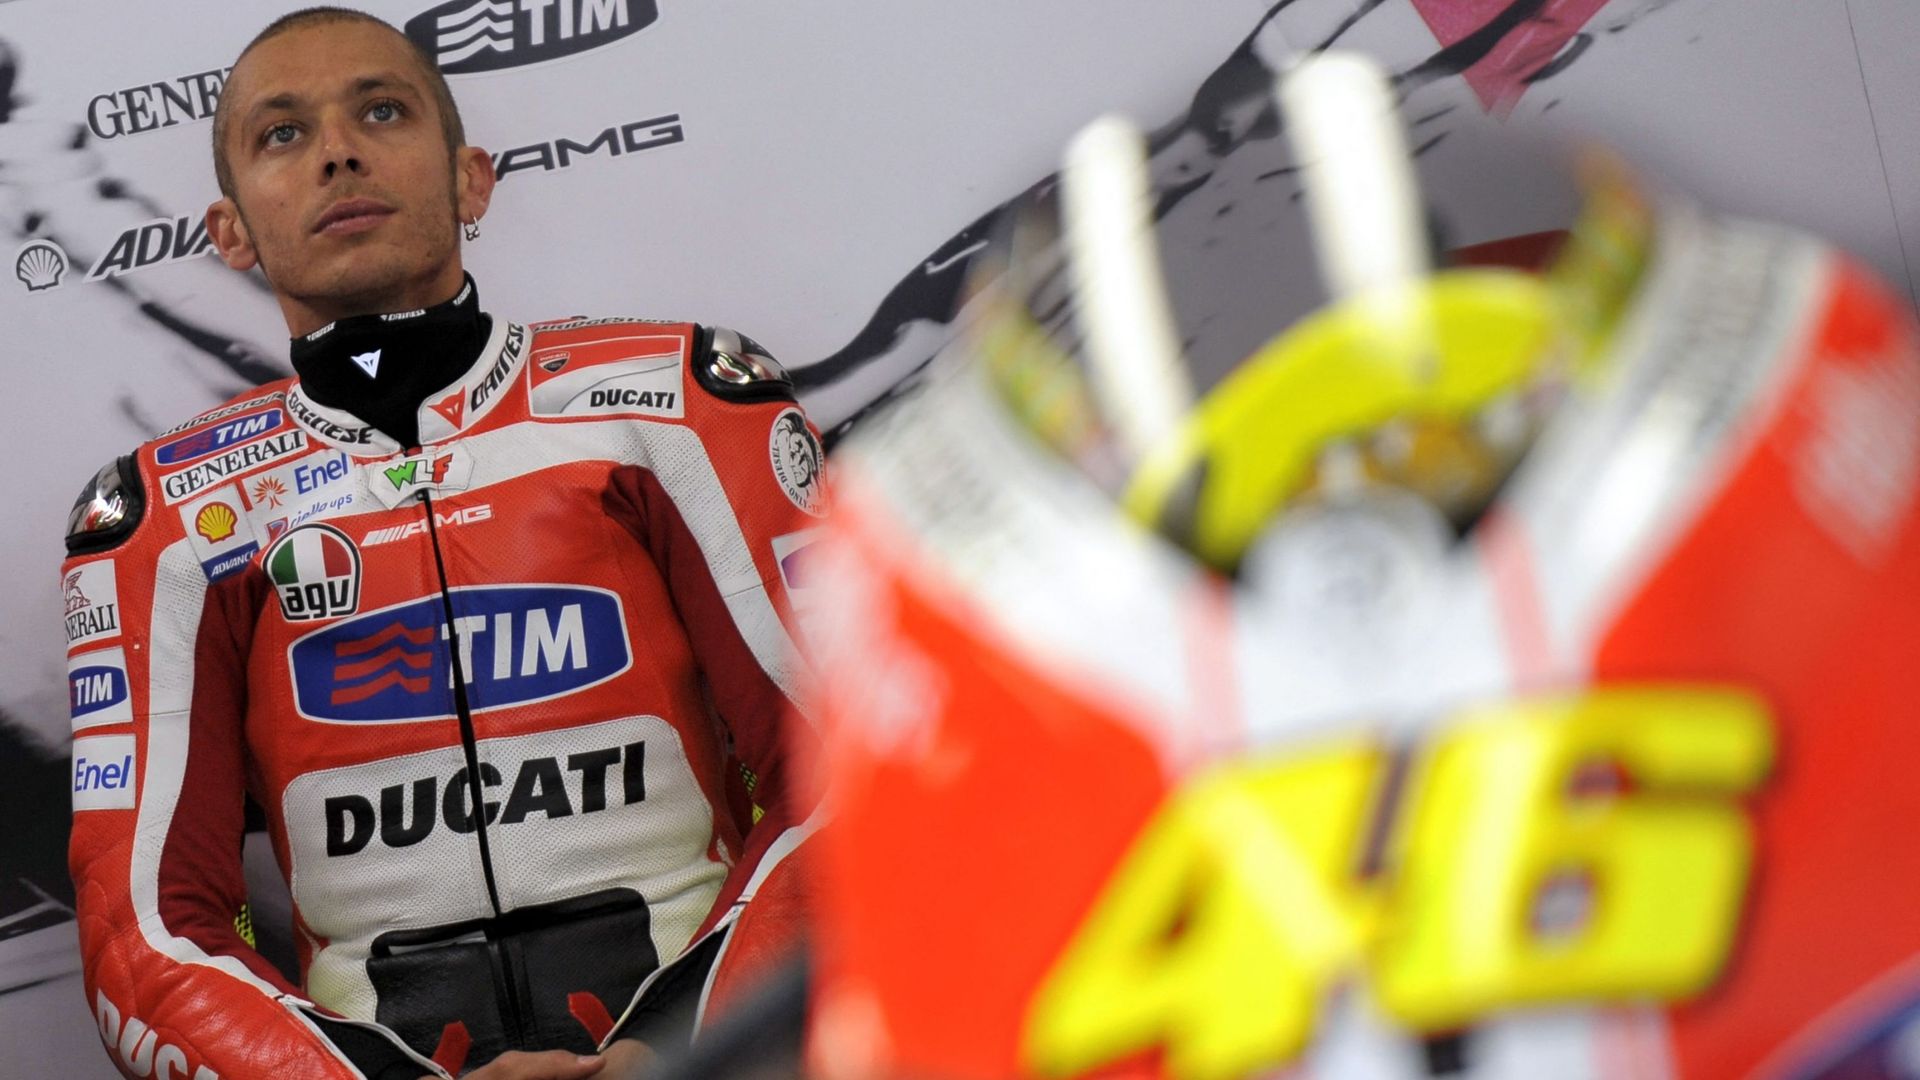 "The Doctor" passera deux saisons chez Ducati (2011-2012) :"Ce sera mais plus grosse erreur" confiera Rossi.